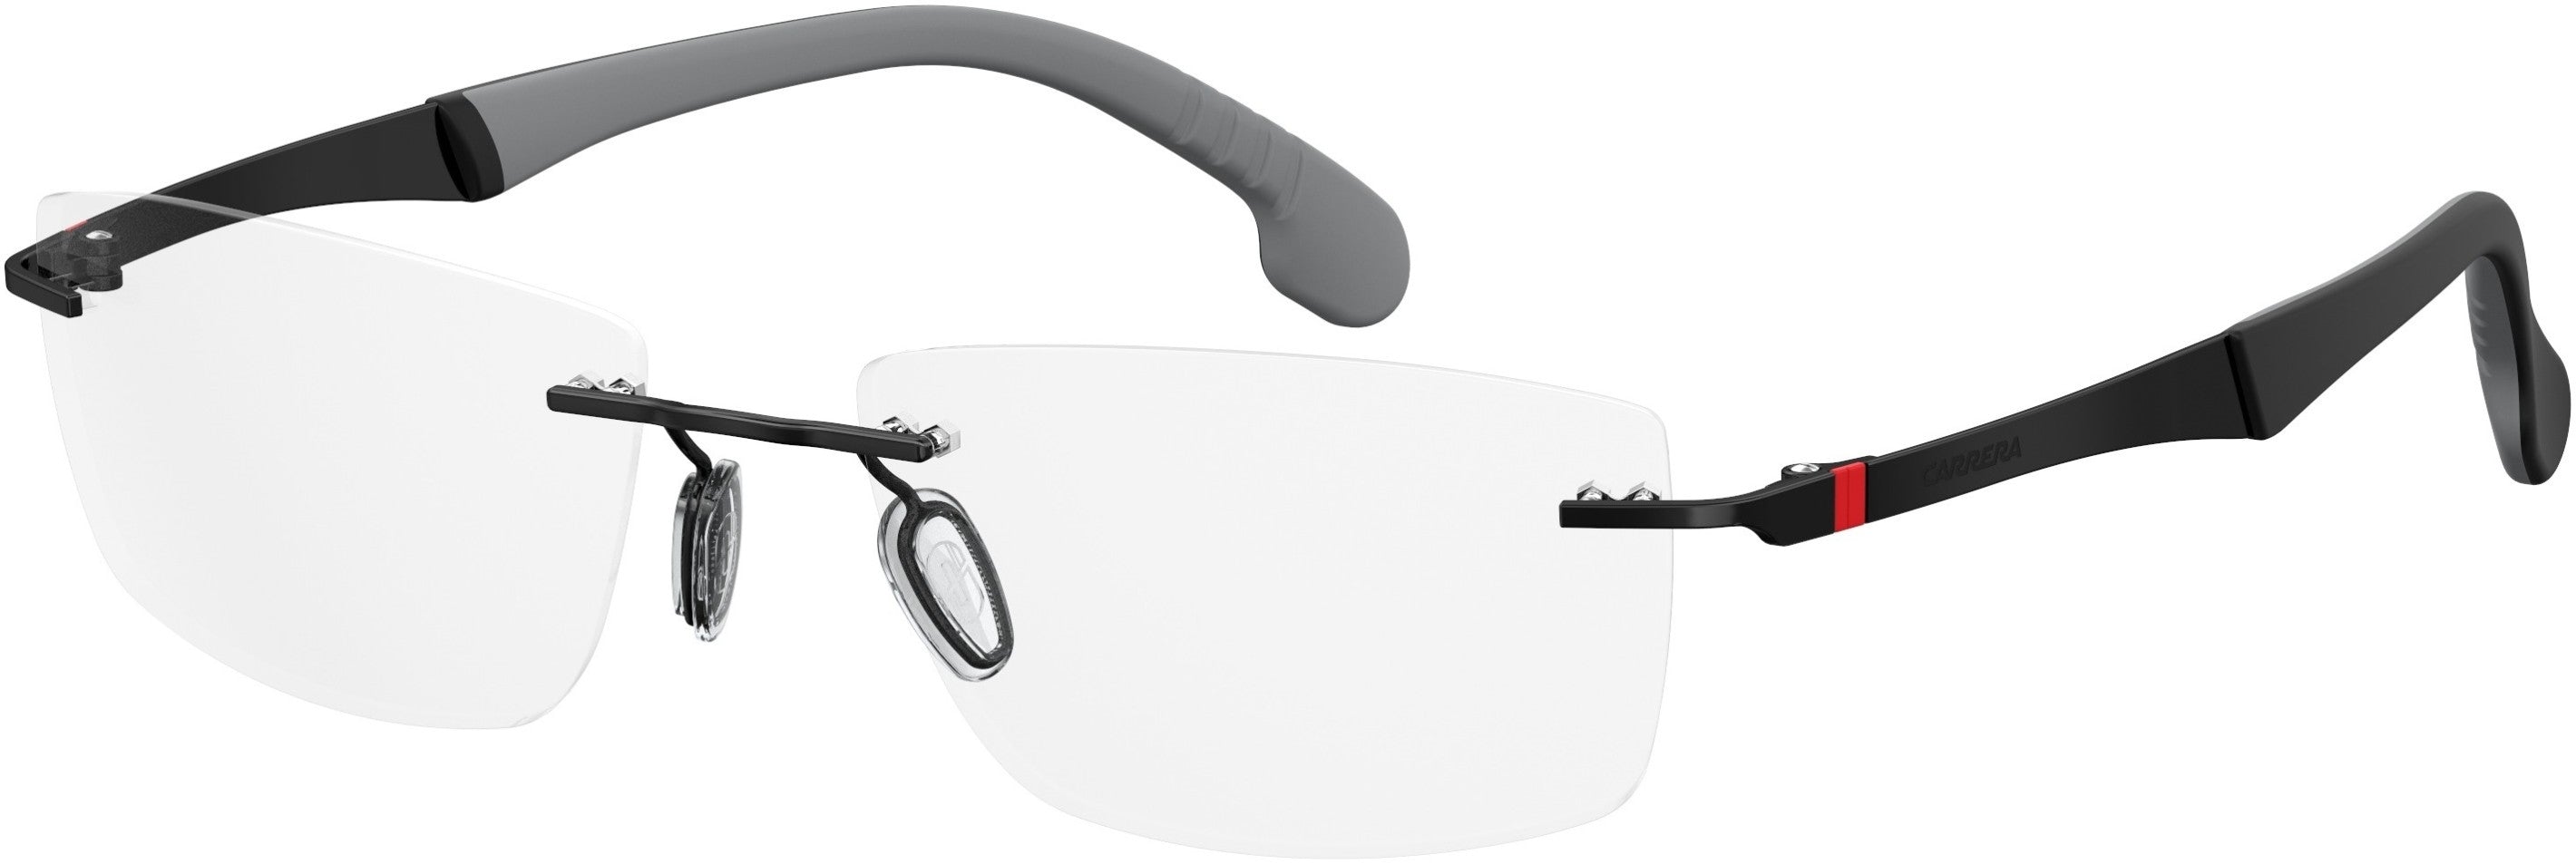  Carrera 8823/V Rectangular Eyeglasses 0807-0807  Black (00 Demo Lens)